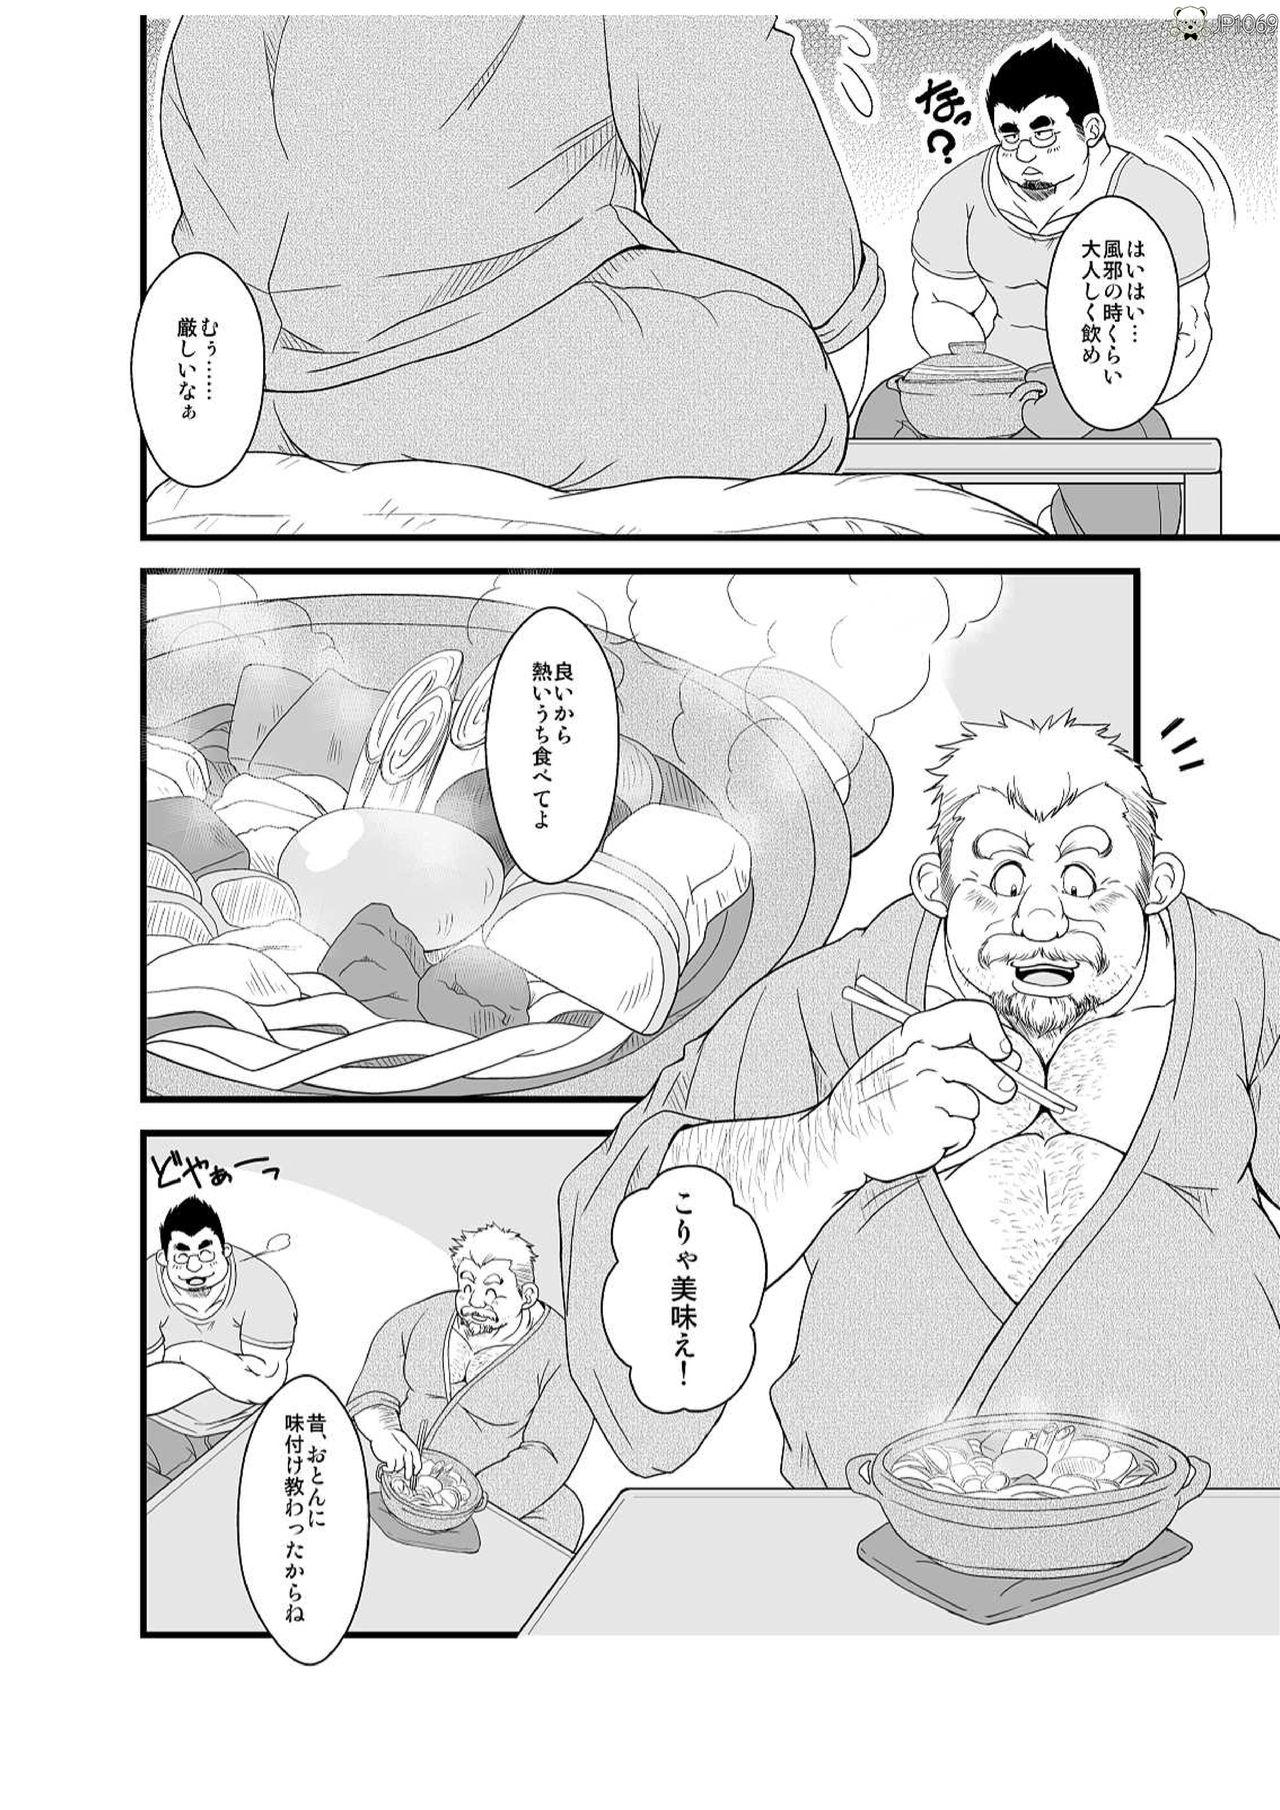 Masterbate Haru natsu aki fuyu - Original 4some - Page 4